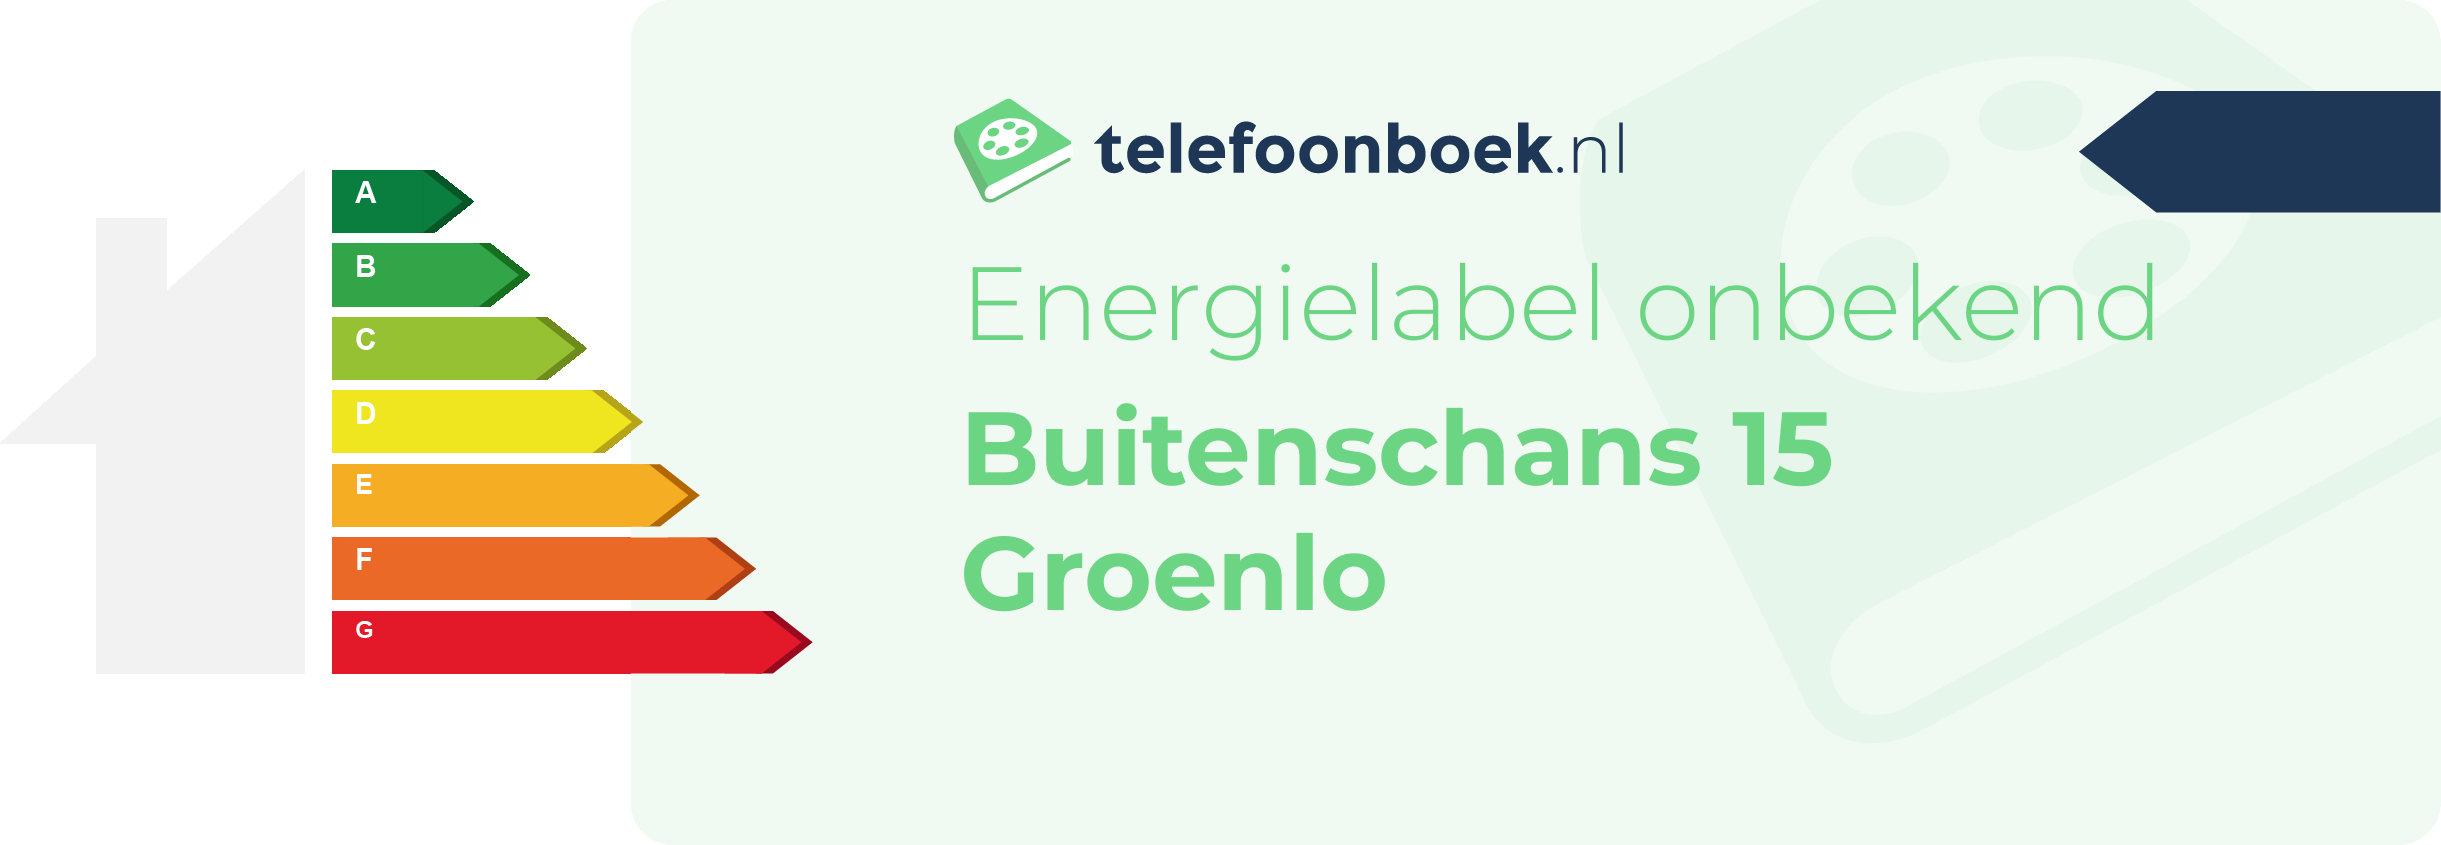 Energielabel Buitenschans 15 Groenlo